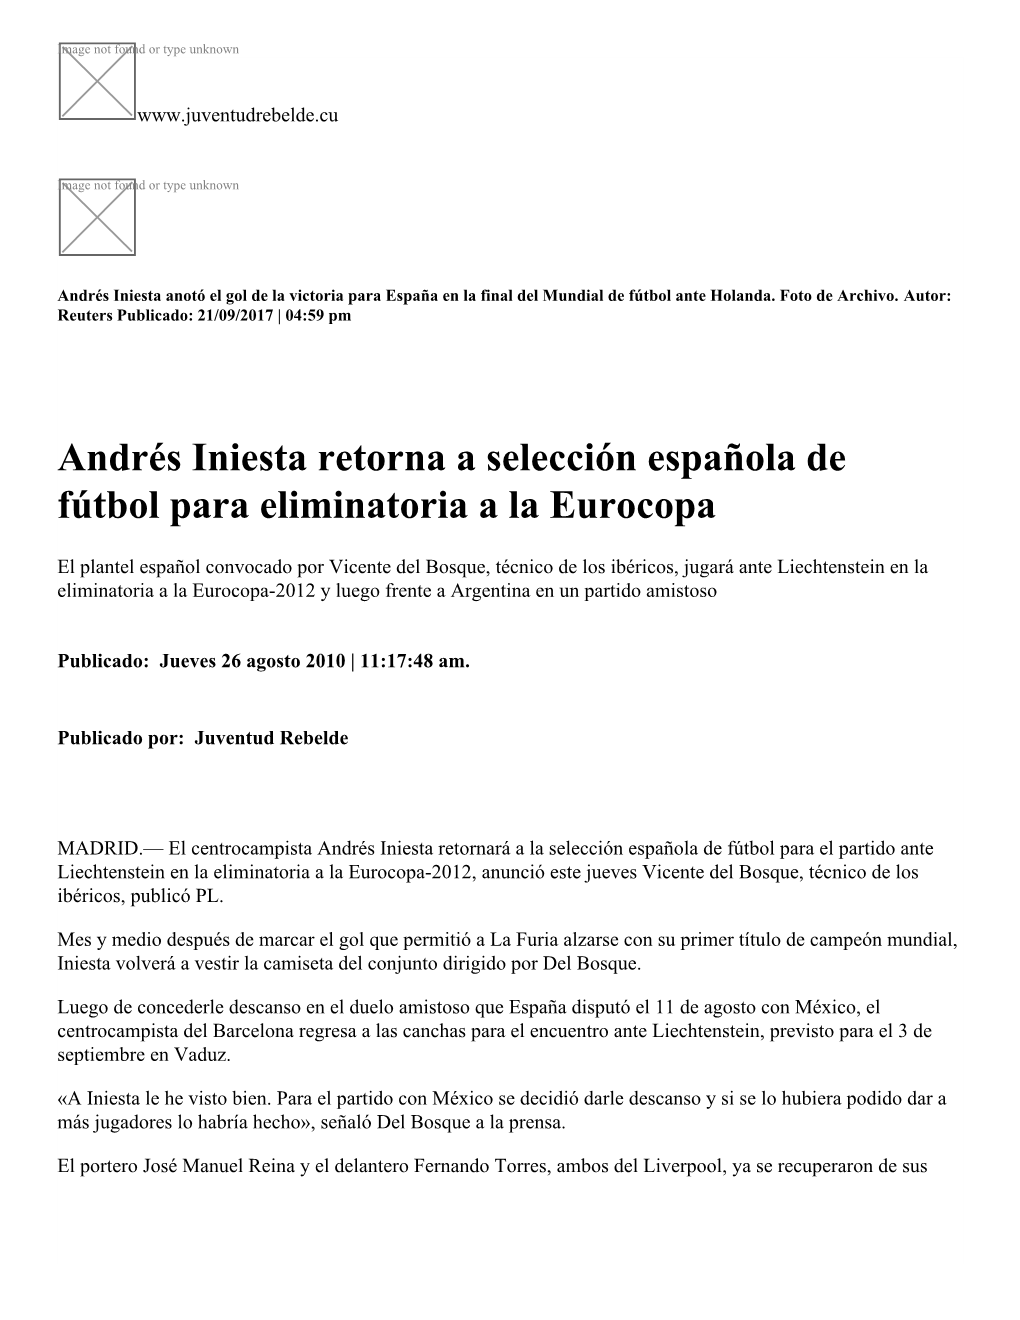 Andrés Iniesta Retorna a Selección Española De Fútbol Para Eliminatoria a La Eurocopa